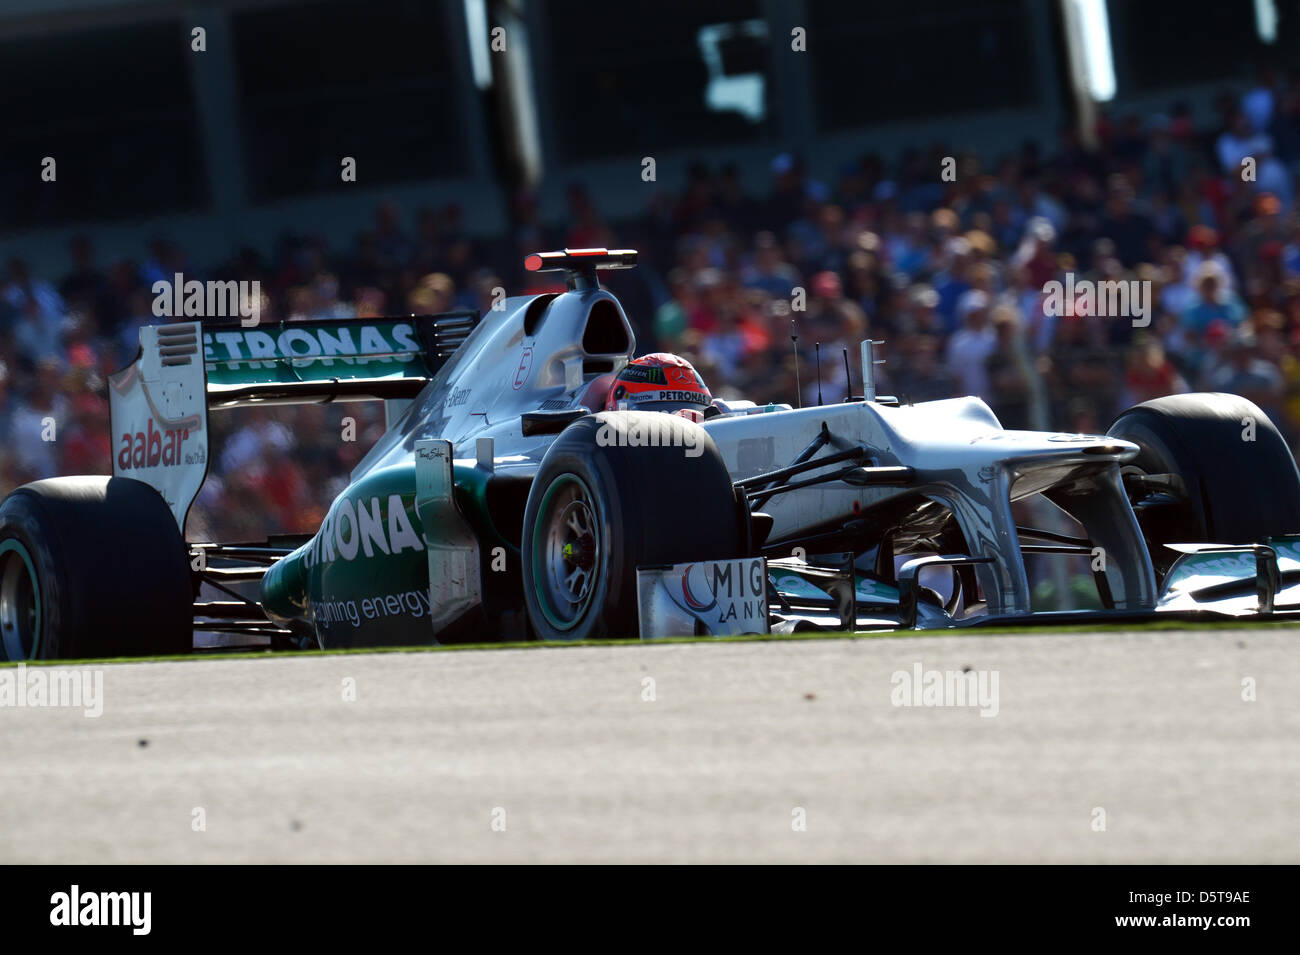 Deutsche Formel1 Rennfahrer Michael Schumacher von Mercedes AMG steuert sein Auto während der Formel 1 United States Grand Prix auf dem Circuit of The Americas in Austin, Texas, USA, 18. November 2012. Foto: David sollte/Dpa +++(c) Dpa - Bildfunk +++ Stockfoto